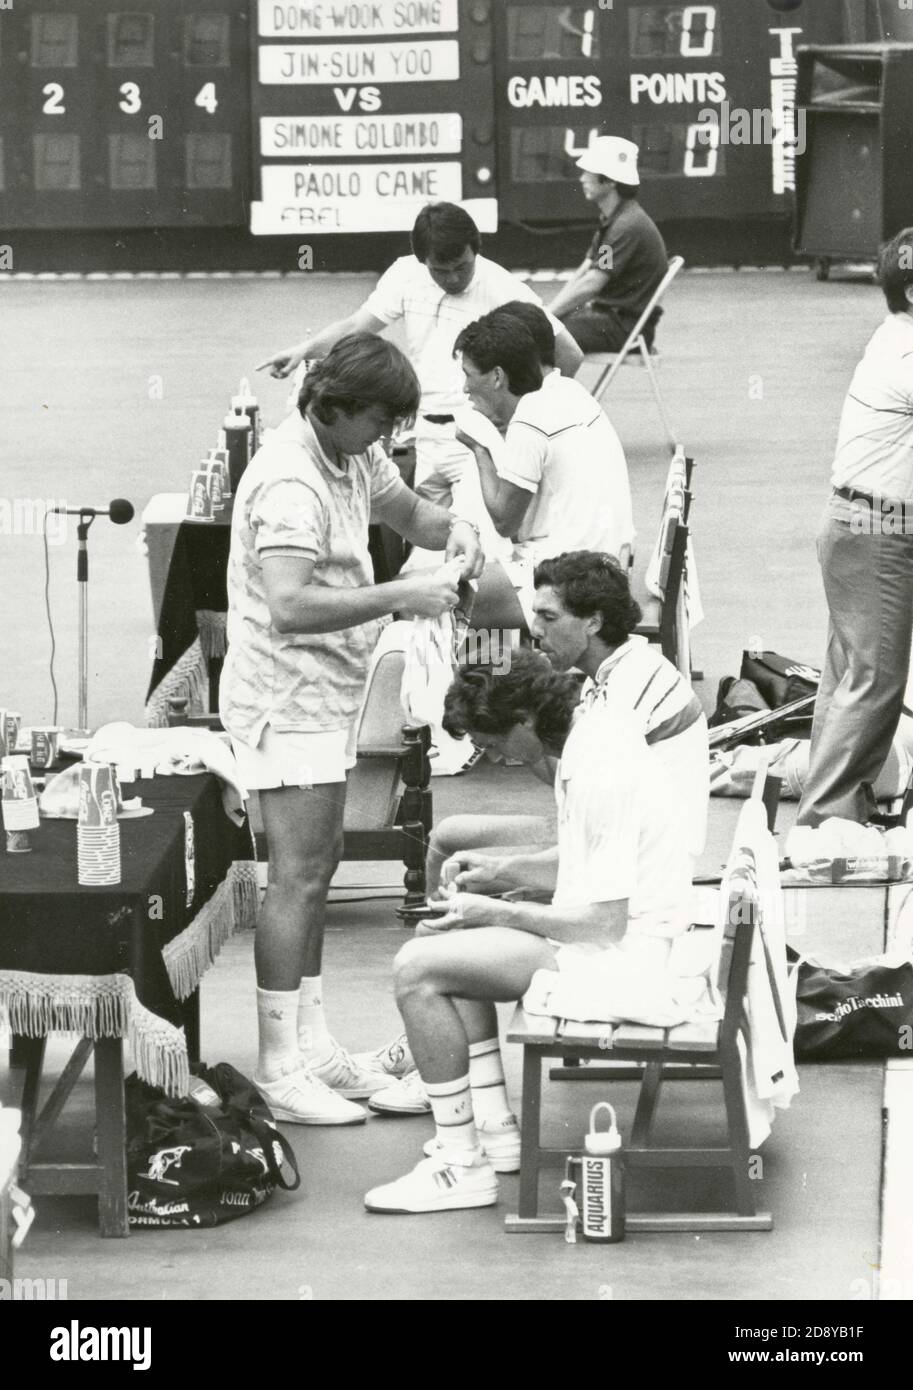 Il team italiano Simone Colombo e Paolo Canè e il team coreano Dong-wook Song e Jin-Sung Yoo al playoff della Coppa Davis, Seul, Corea 1987 Foto Stock